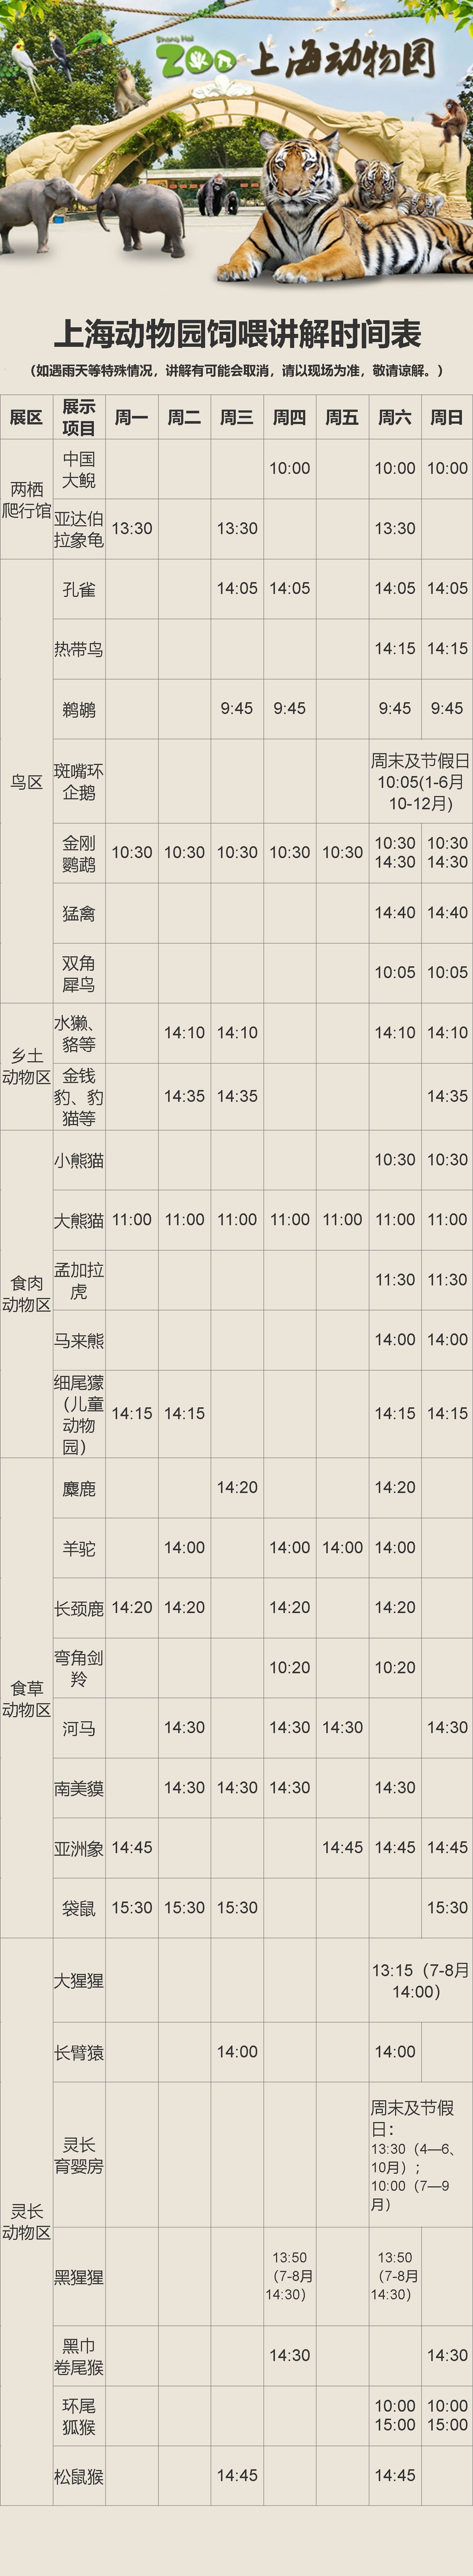 上海动物园饲喂讲解时间表.png